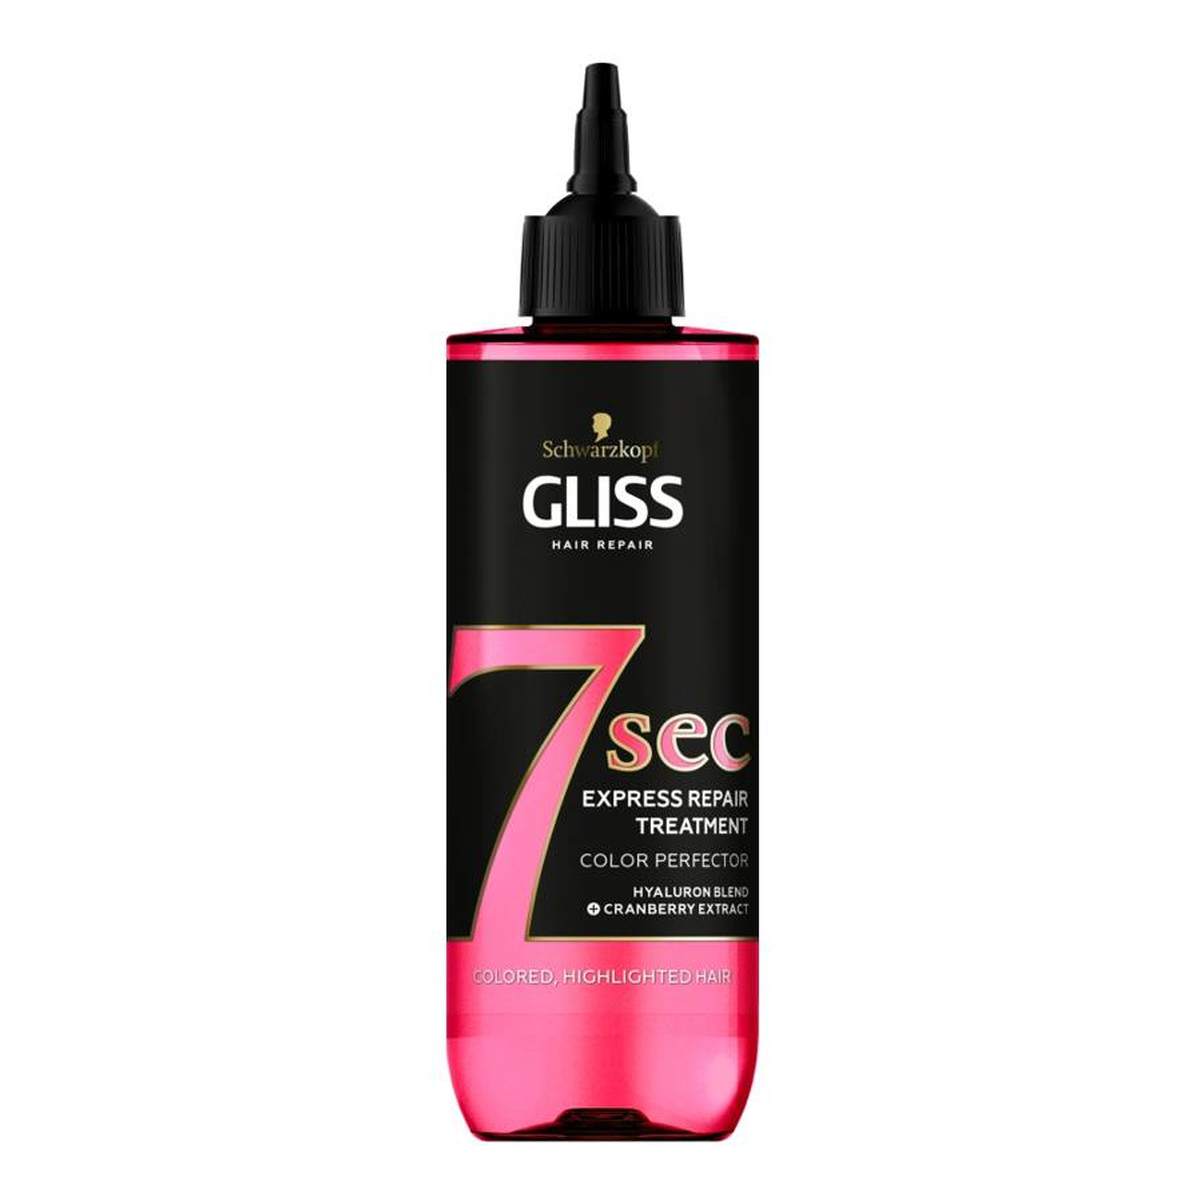 Gliss 7sec Express Repair Treatment Color Perfector ekspresowa kuracja do włosów nadająca blask 200ml